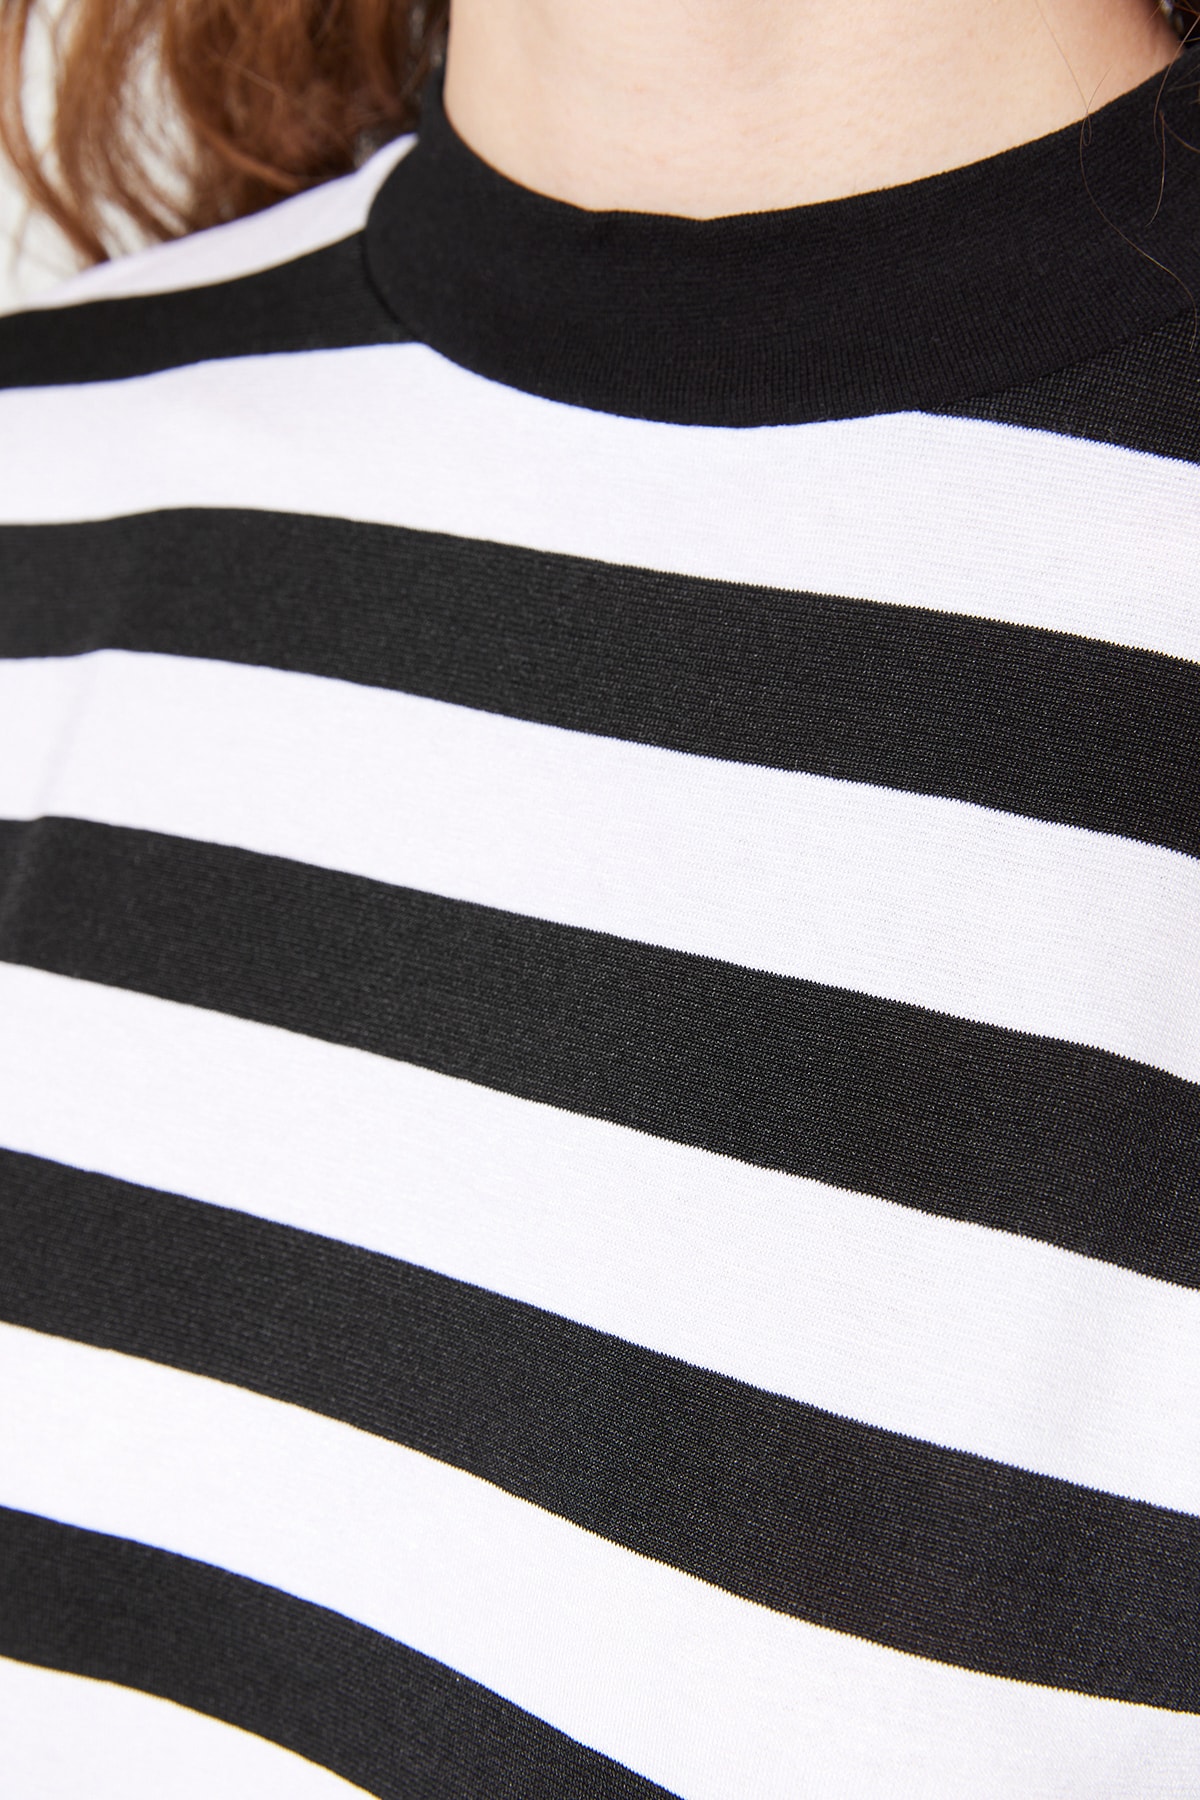 Siyah Beyaz Çizgili Basic Dik Yaka Örme T-Shirt TWOSS21TS1204